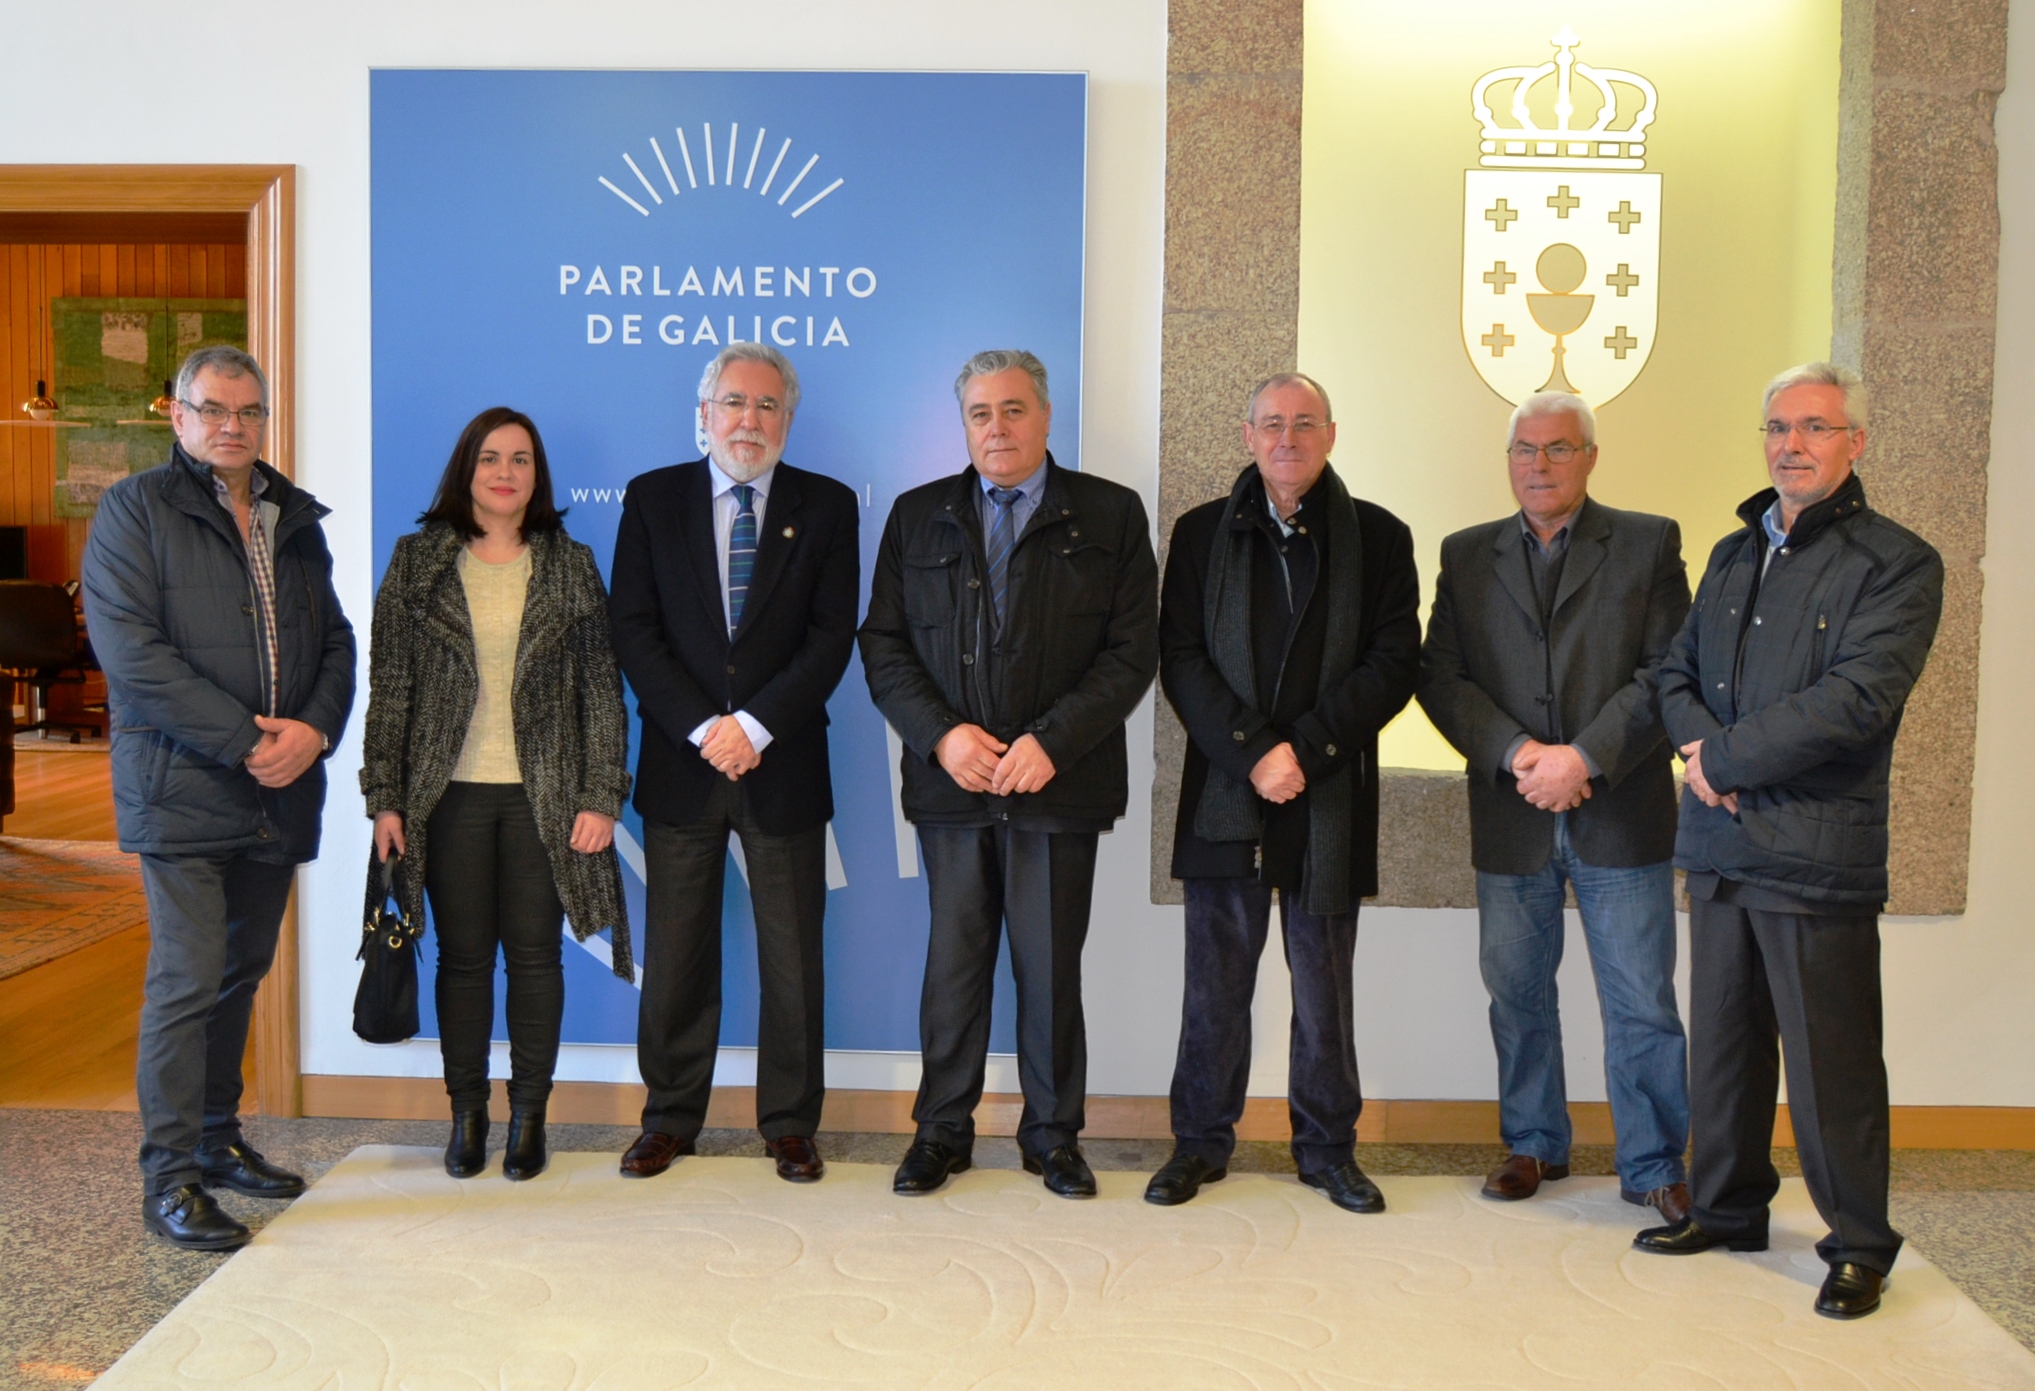 Foto da noticia:Integrantes da Corporación de Lobeira visitan o Parlamento de Galicia